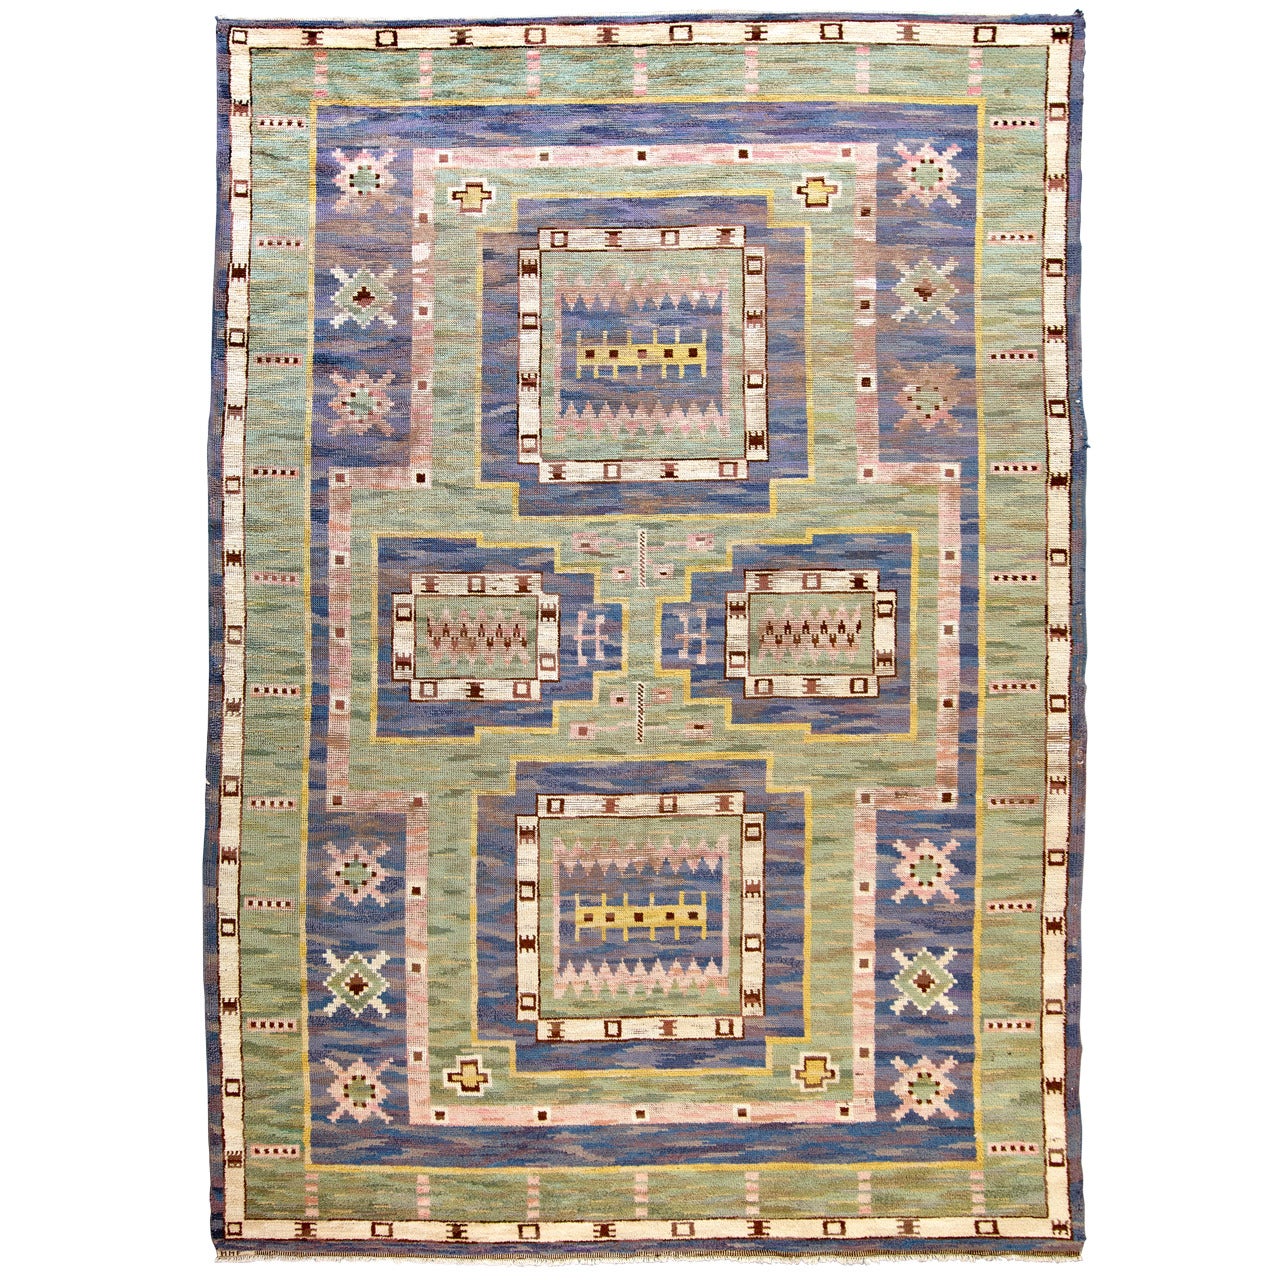 Early Marta Maas-Fjetterström Pile Carpet "Blå Rektangeln" MMF 1927